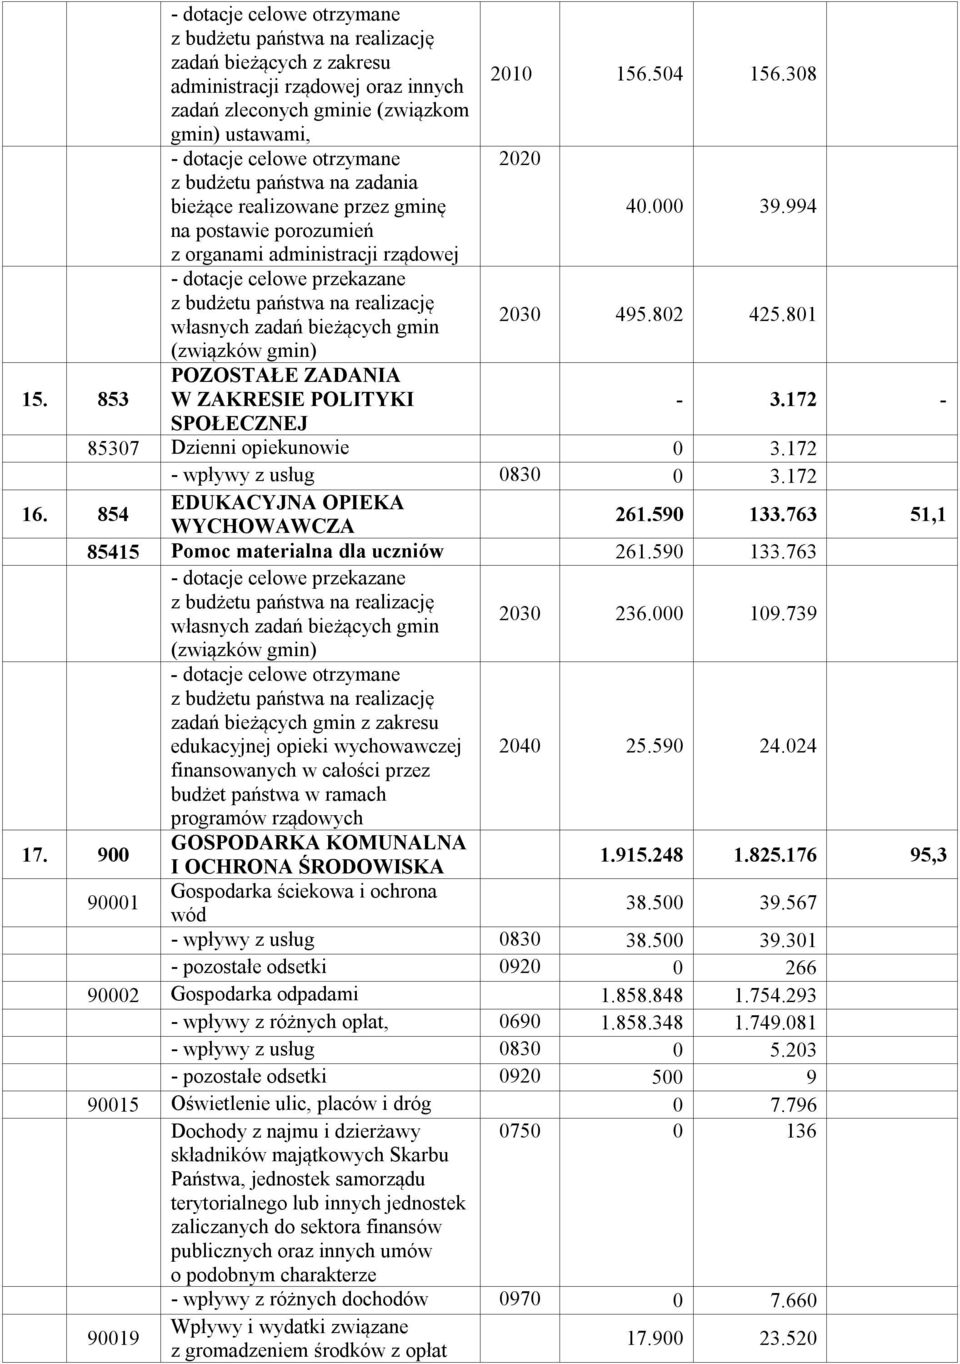 994 na postawie porozumień z organami administracji rządowej - dotacje celowe przekazane z budżetu państwa na realizację własnych zadań bieżących gmin 2030 495.802 425.